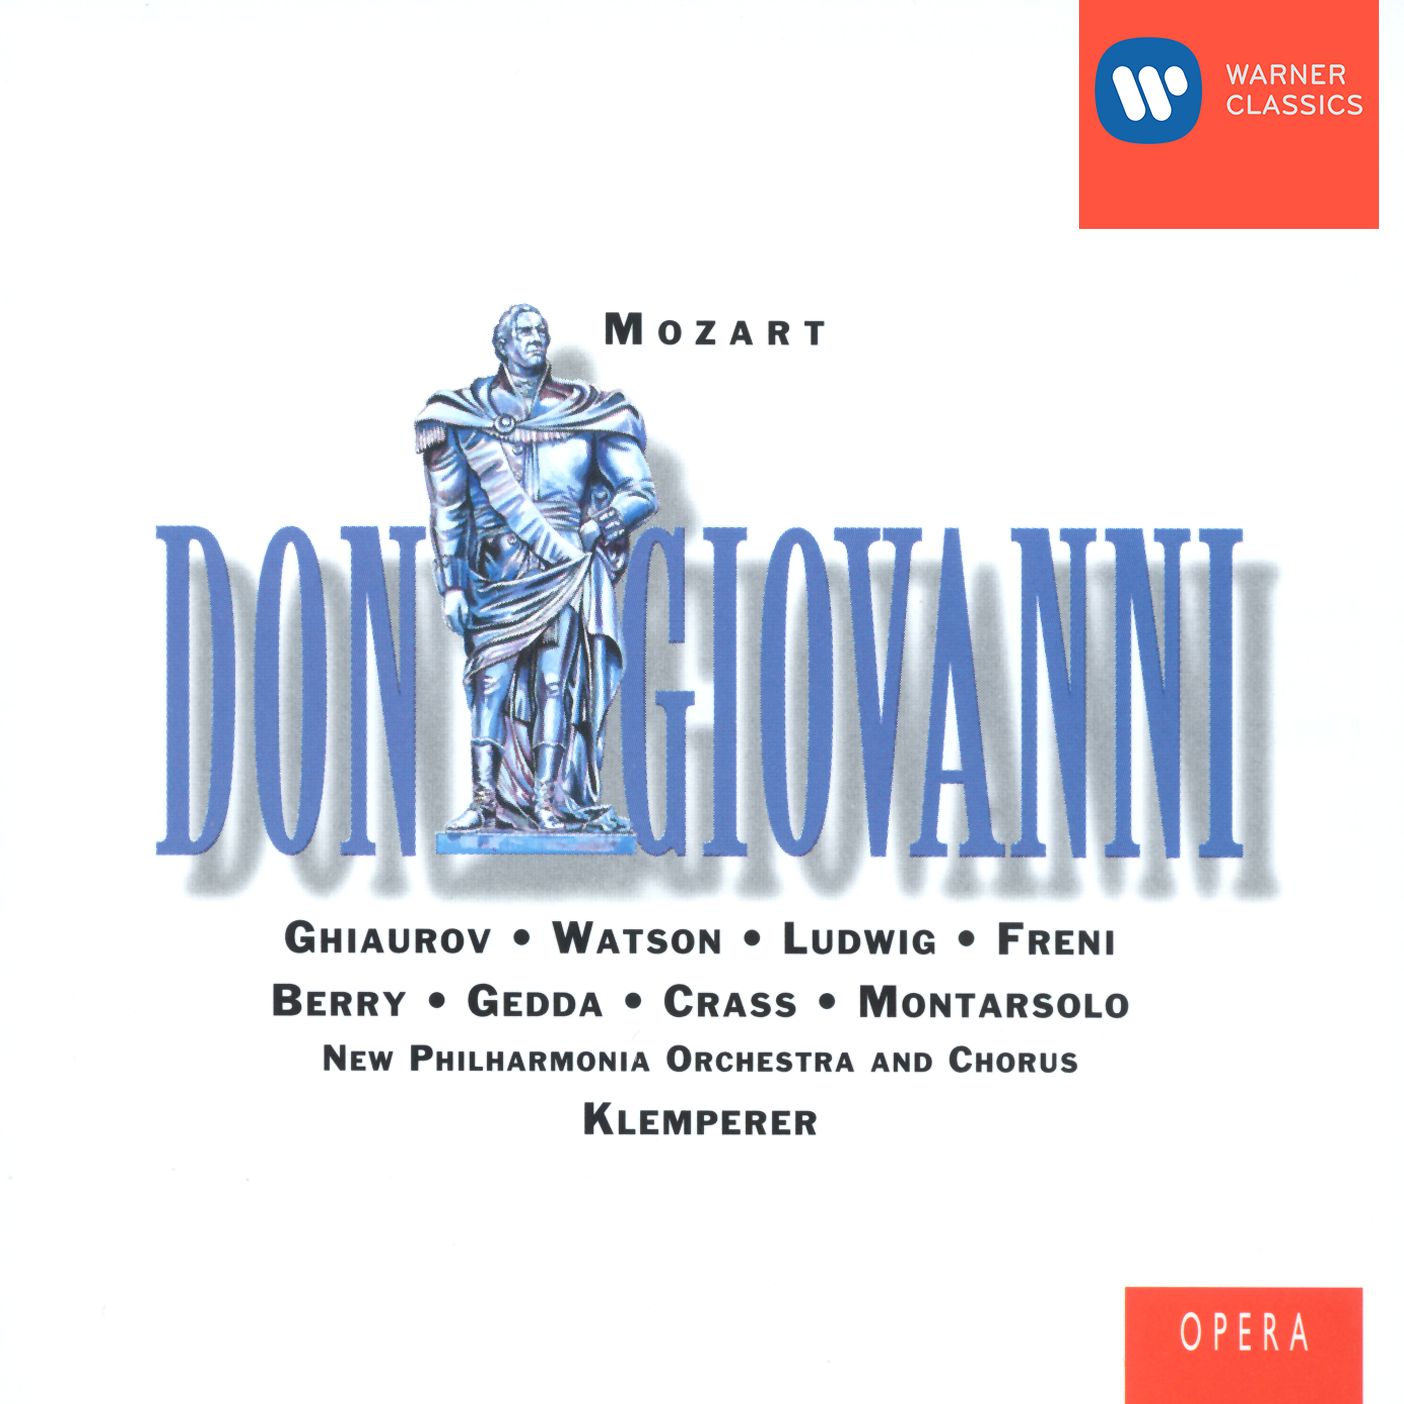 Don Giovanni K527, Atto Secondo, Scena quarta, Recitativo & Aria: Crudele? Ah no, mio bene!